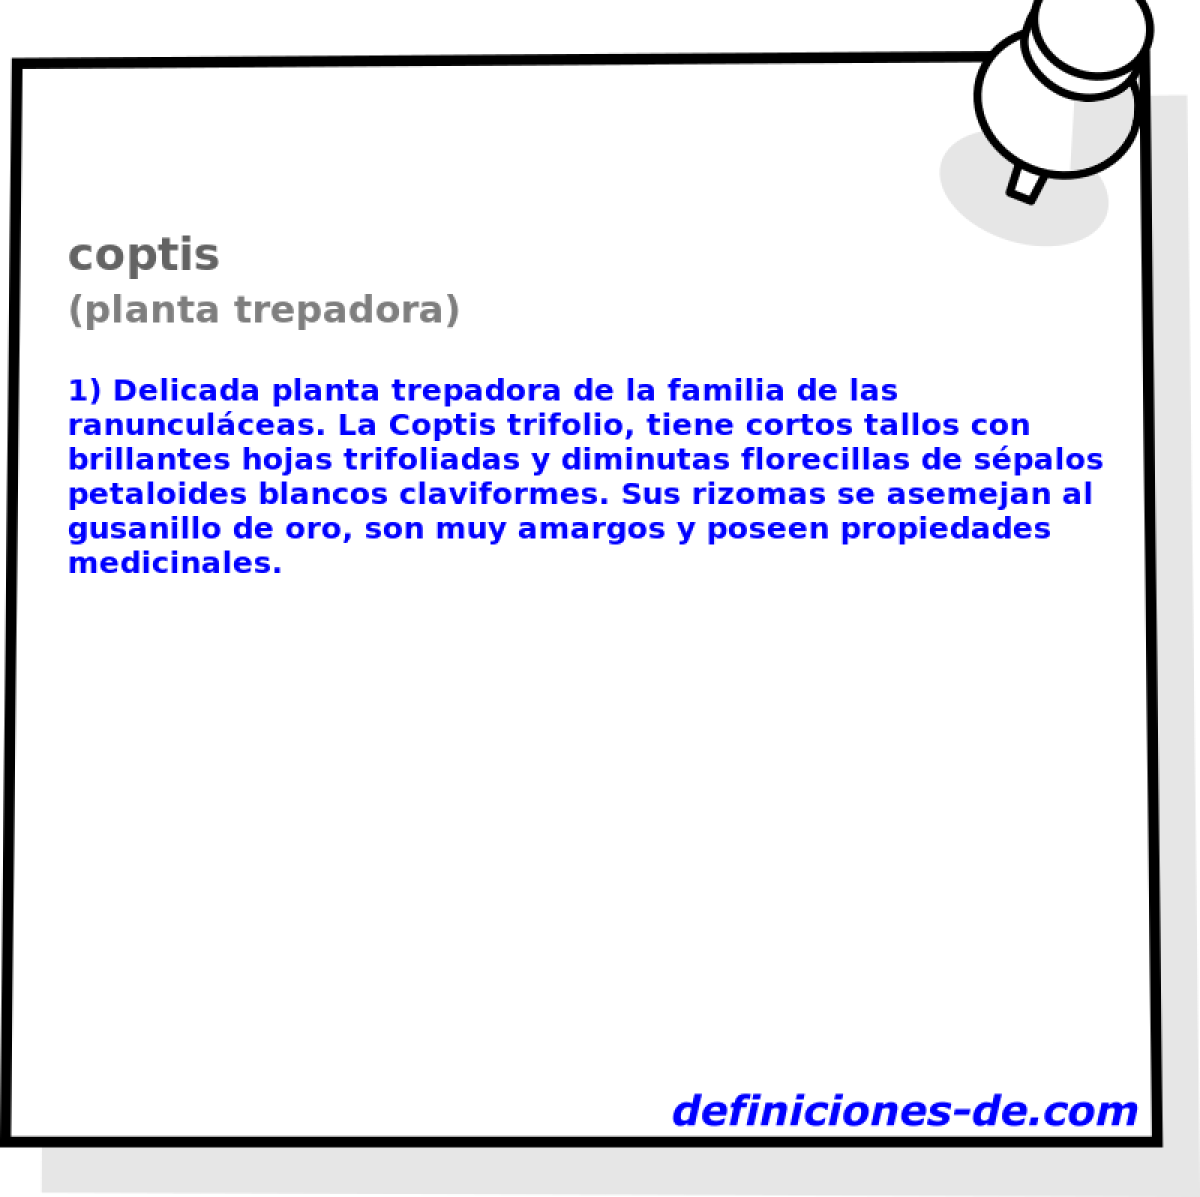 coptis (planta trepadora)